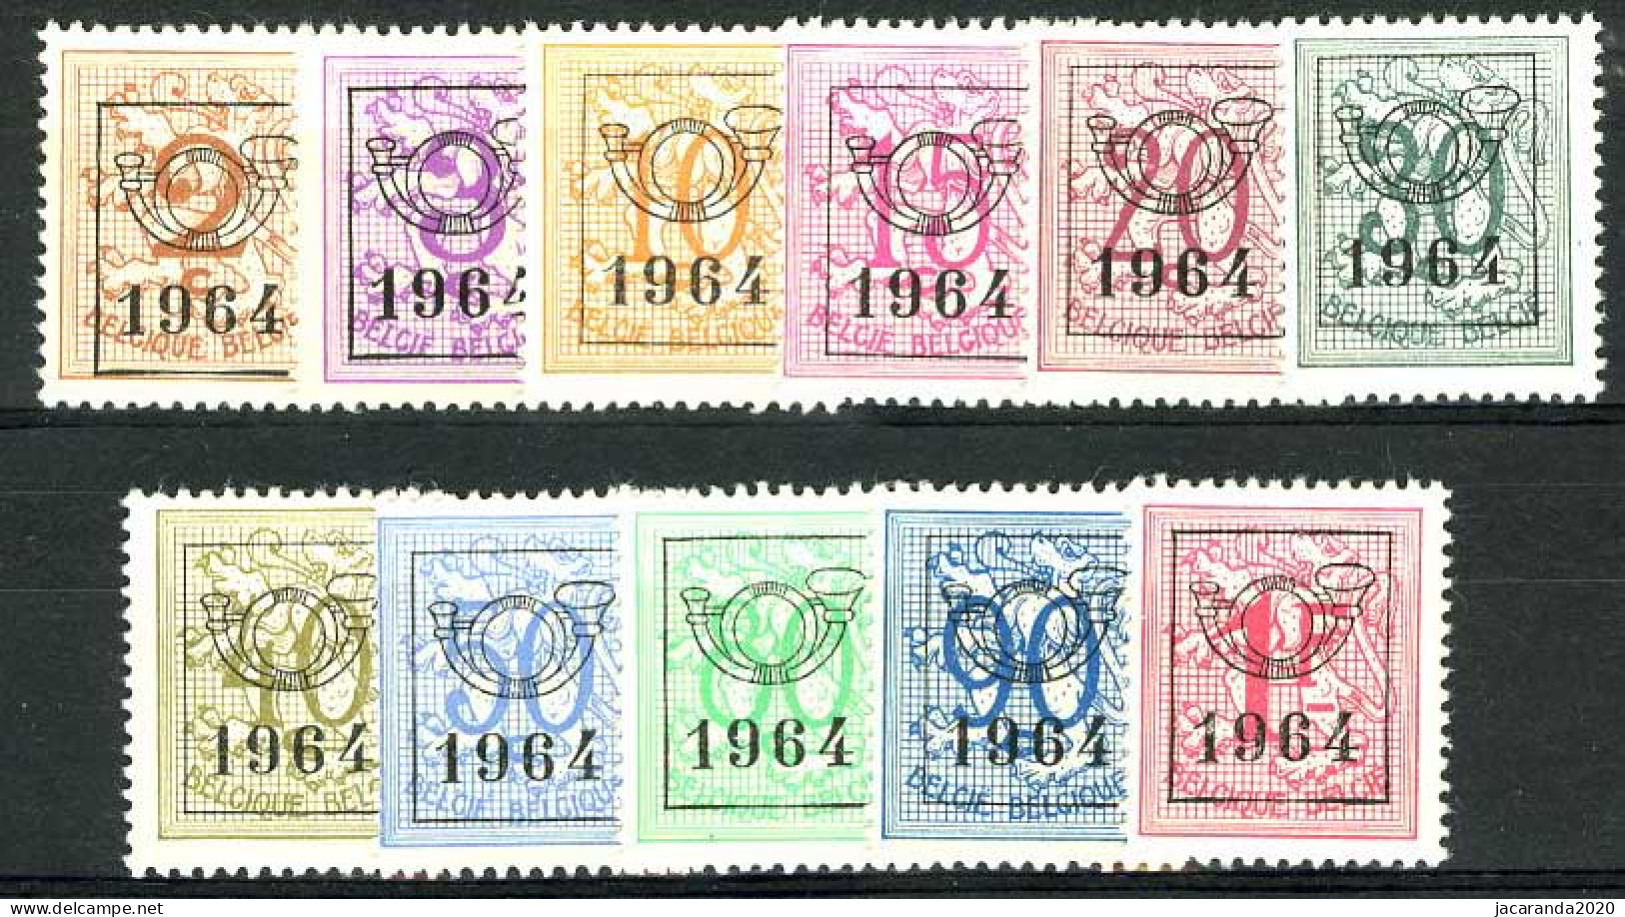 België PRE747/PRE757 ** - 1964 - Cijfer Op Heraldieke Leeuw - Chiffre Sur Lion Héraldique - Preo Reeks 57 - 11w. - Typos 1951-80 (Chiffre Sur Lion)